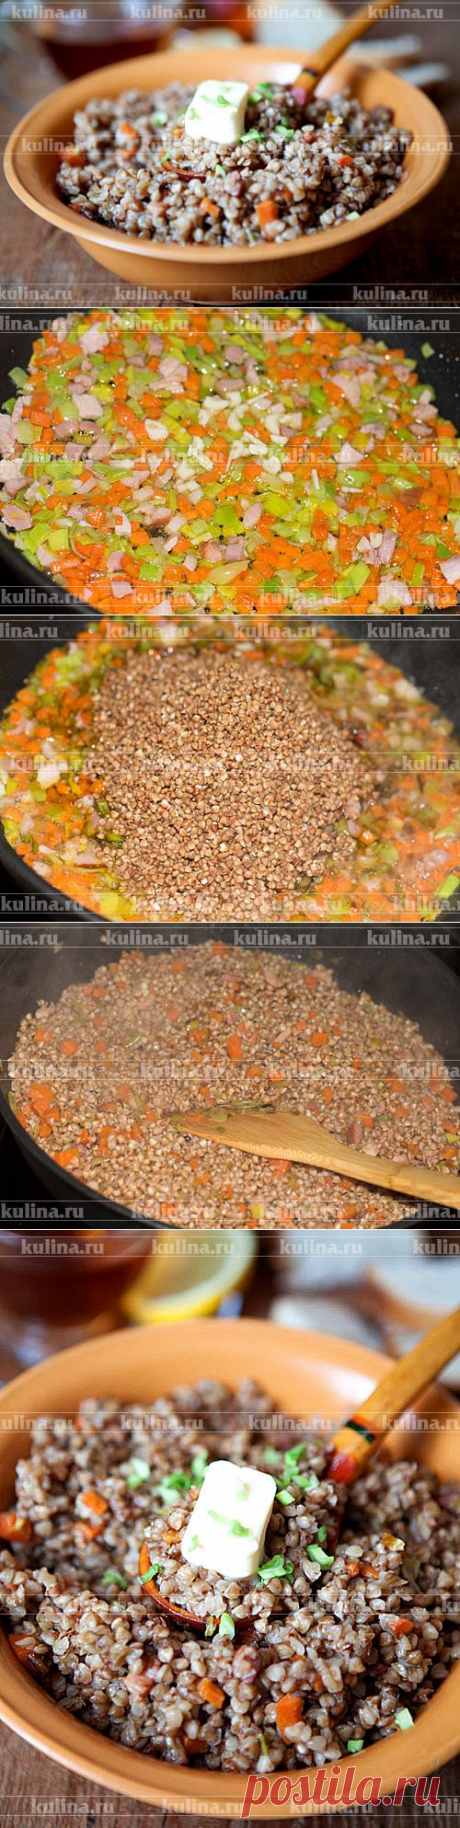 Гречка с овощами – рецепт приготовления с фото от Kulina.Ru